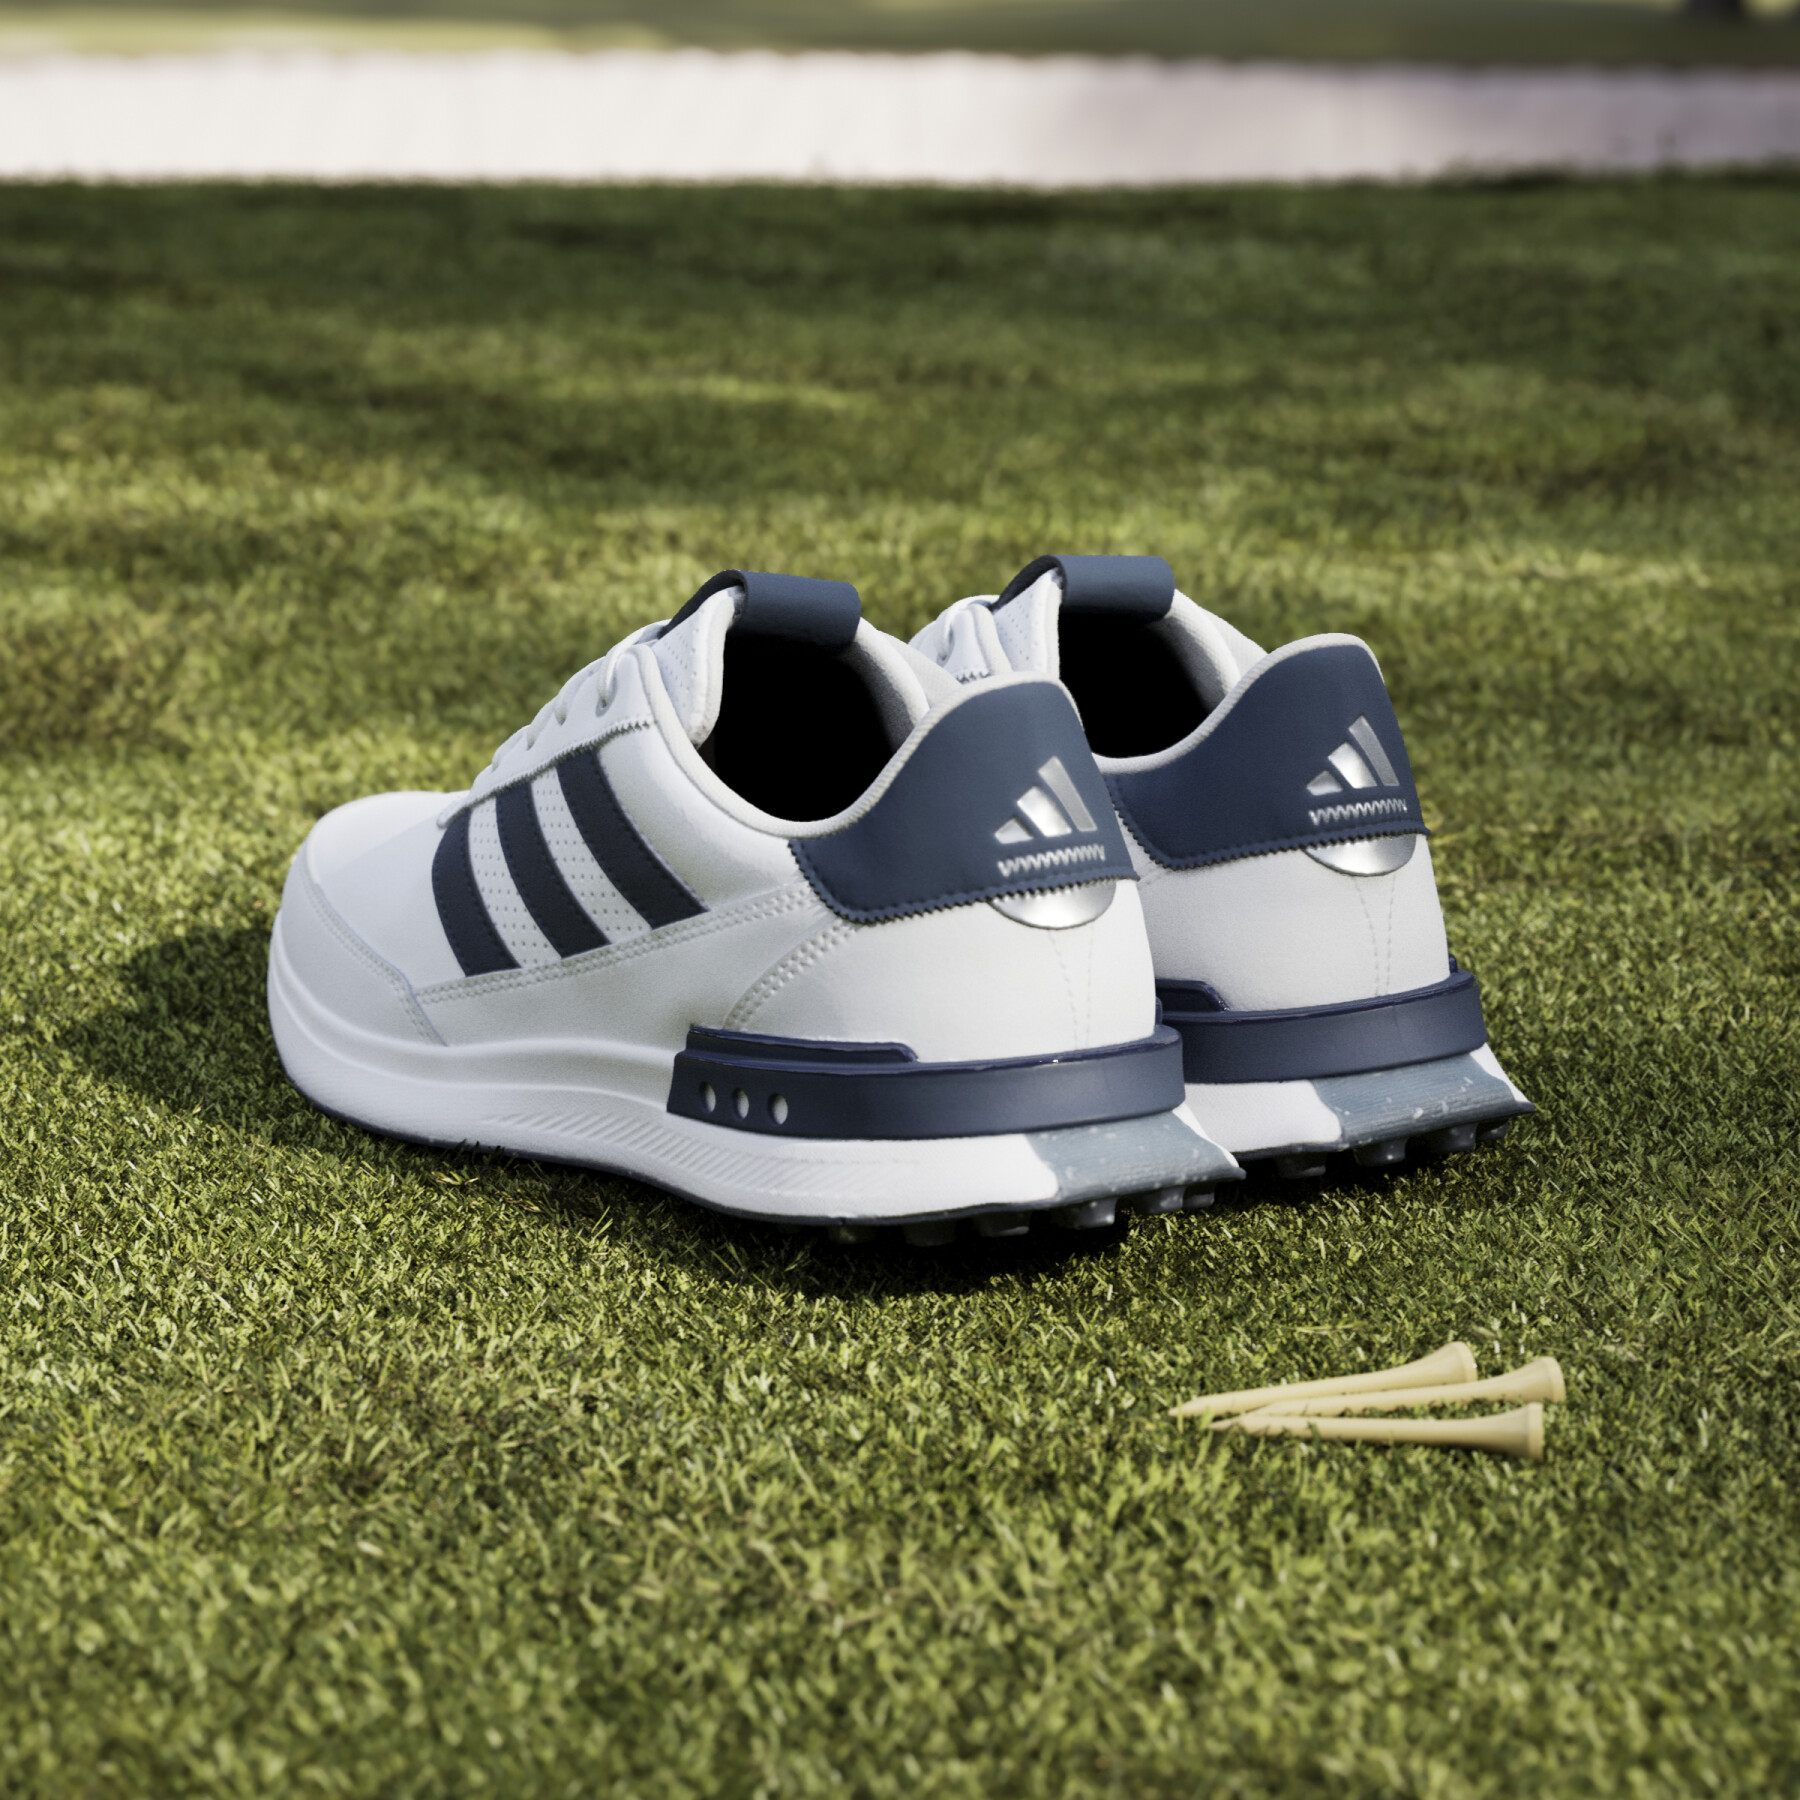 Chaussures de golf sans crampons cuir adidas S2G 24